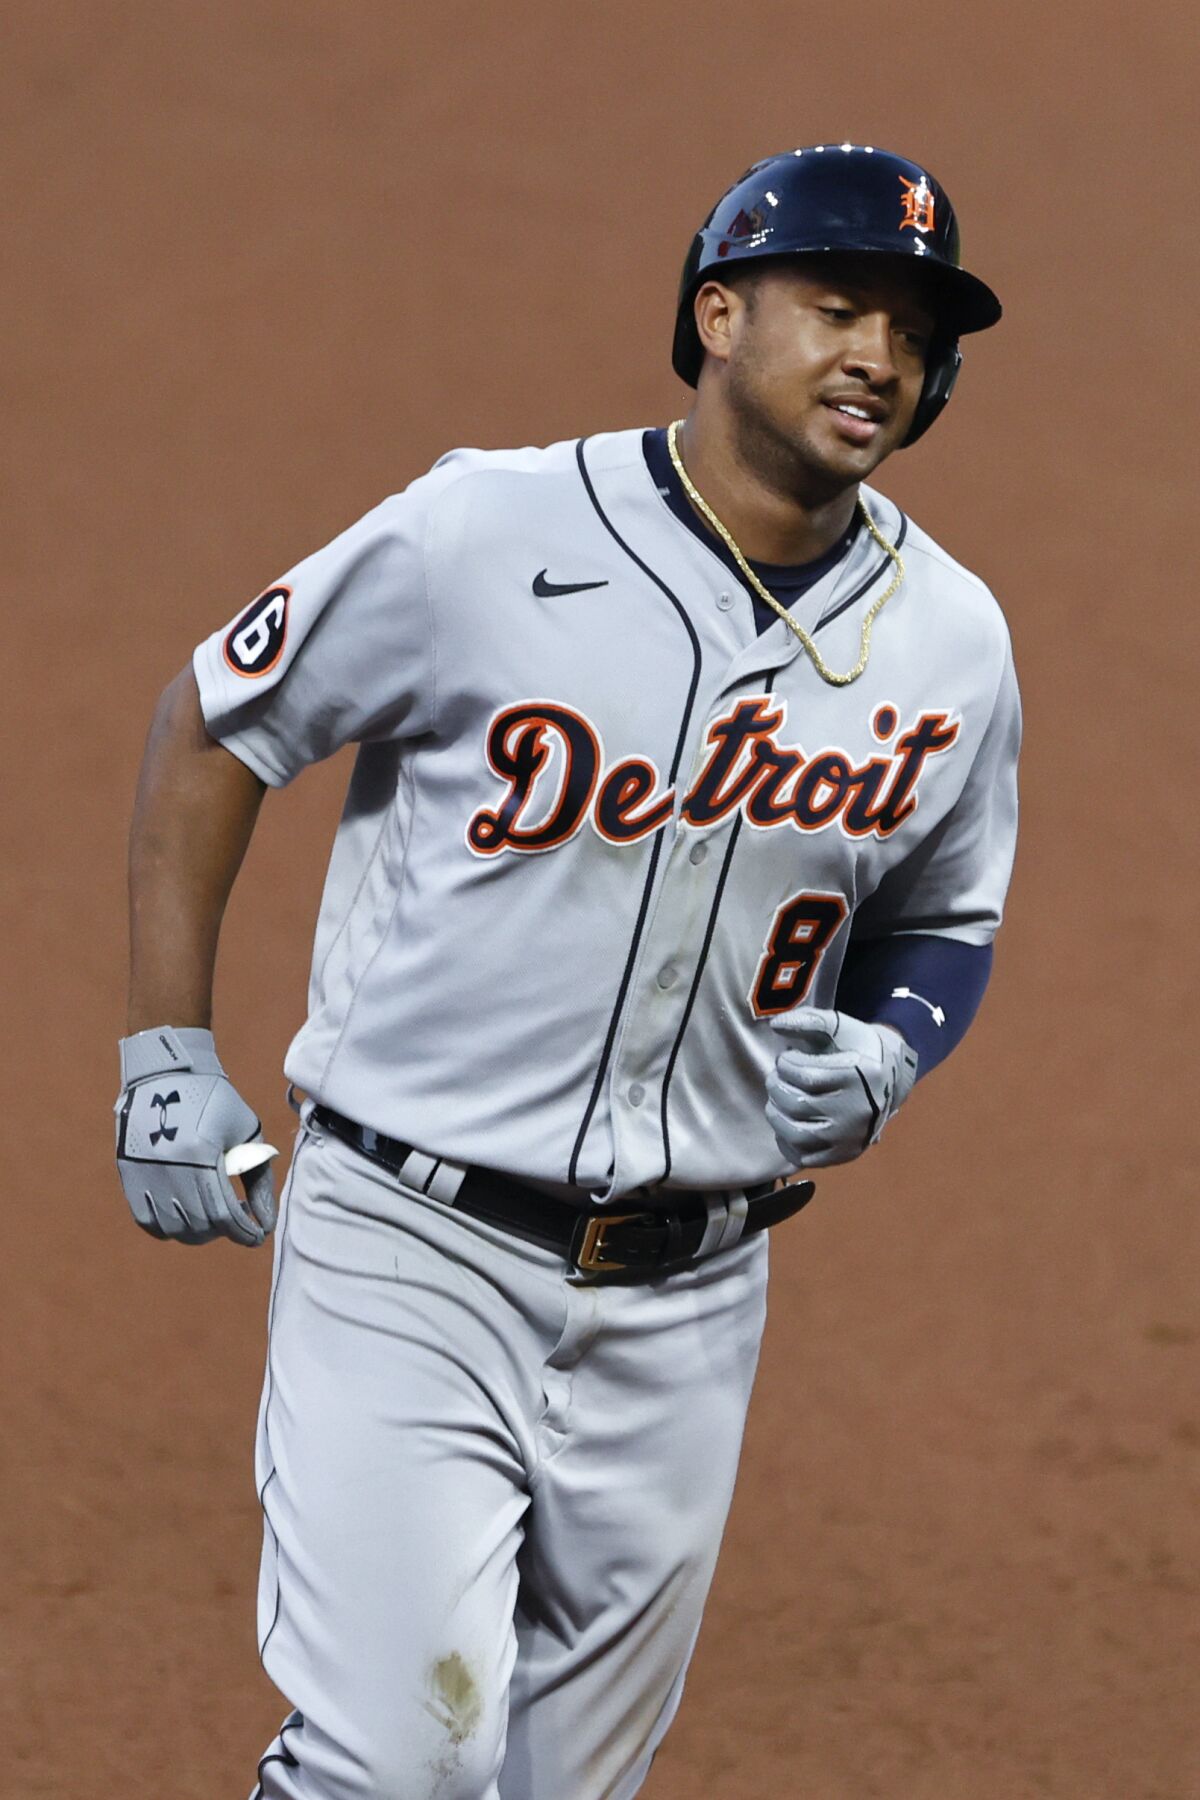 Detroit Tigers Alternate Uniform - American League (AL) - Chris